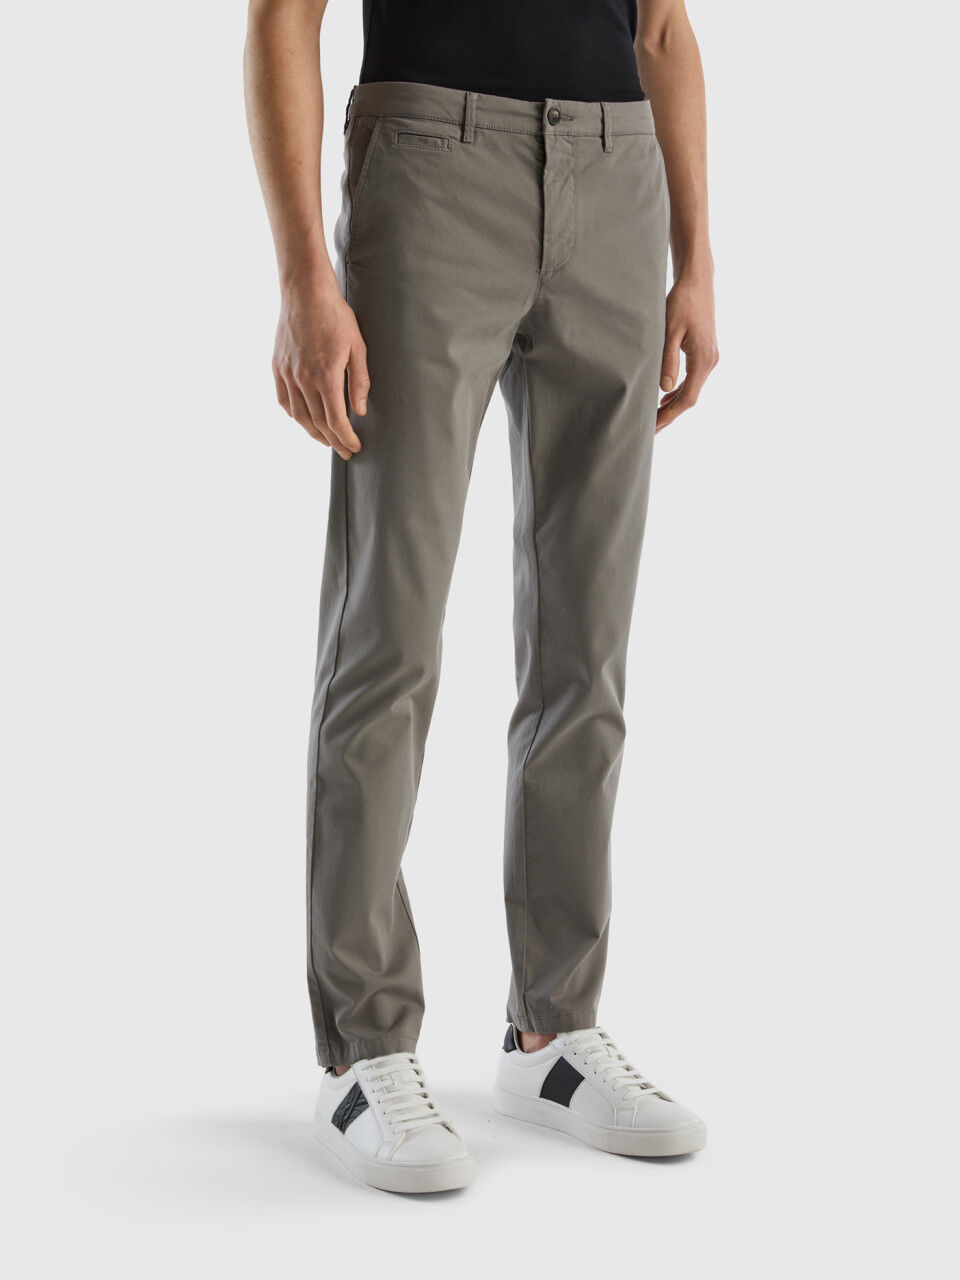 Pantalones Slim Hombre Nueva Colección | Benetton